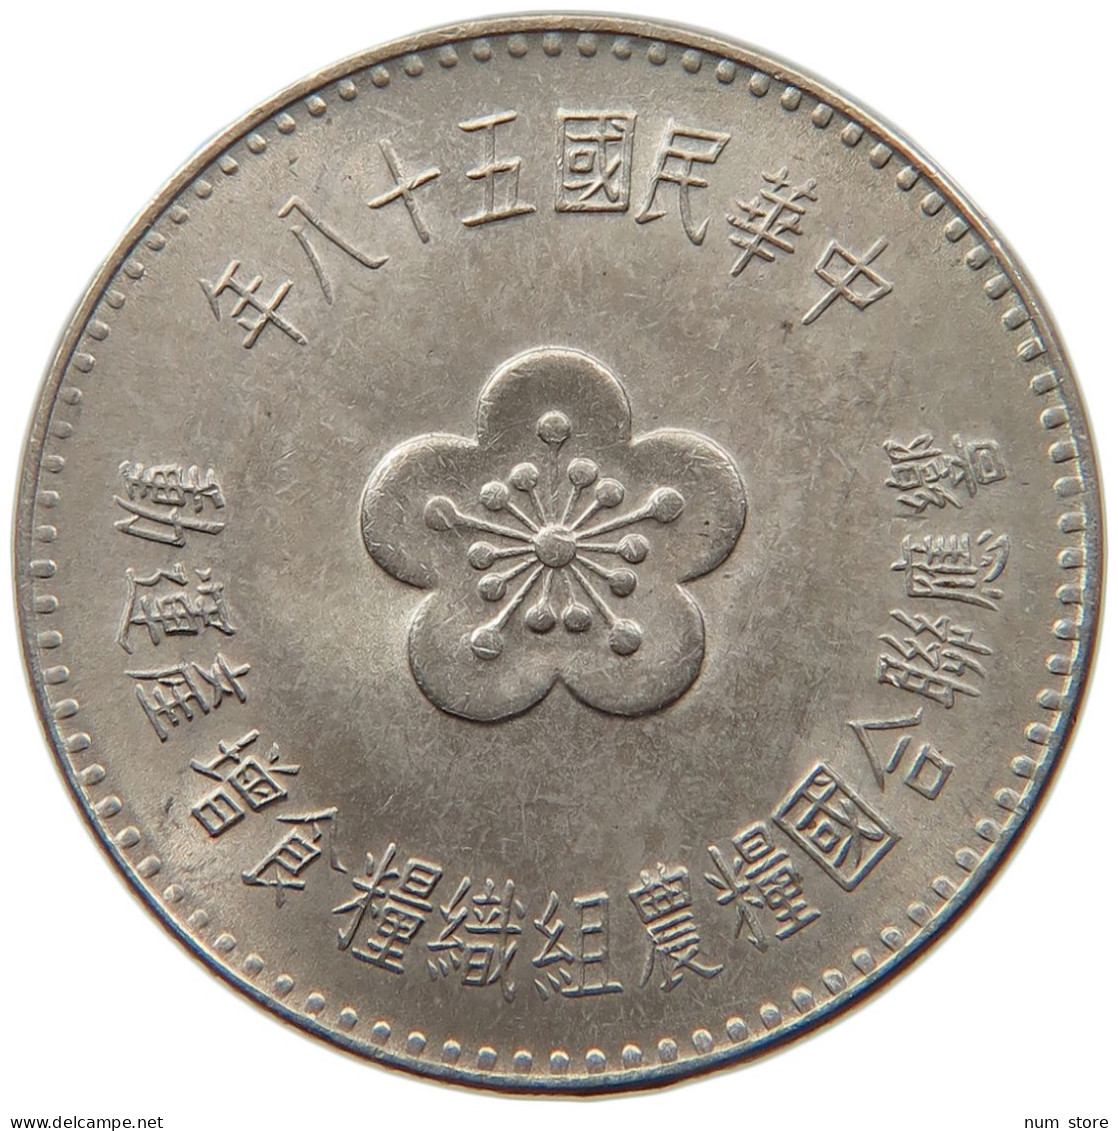 TAIWAN DOLLAR 1969  #MA 099651 - Taiwan